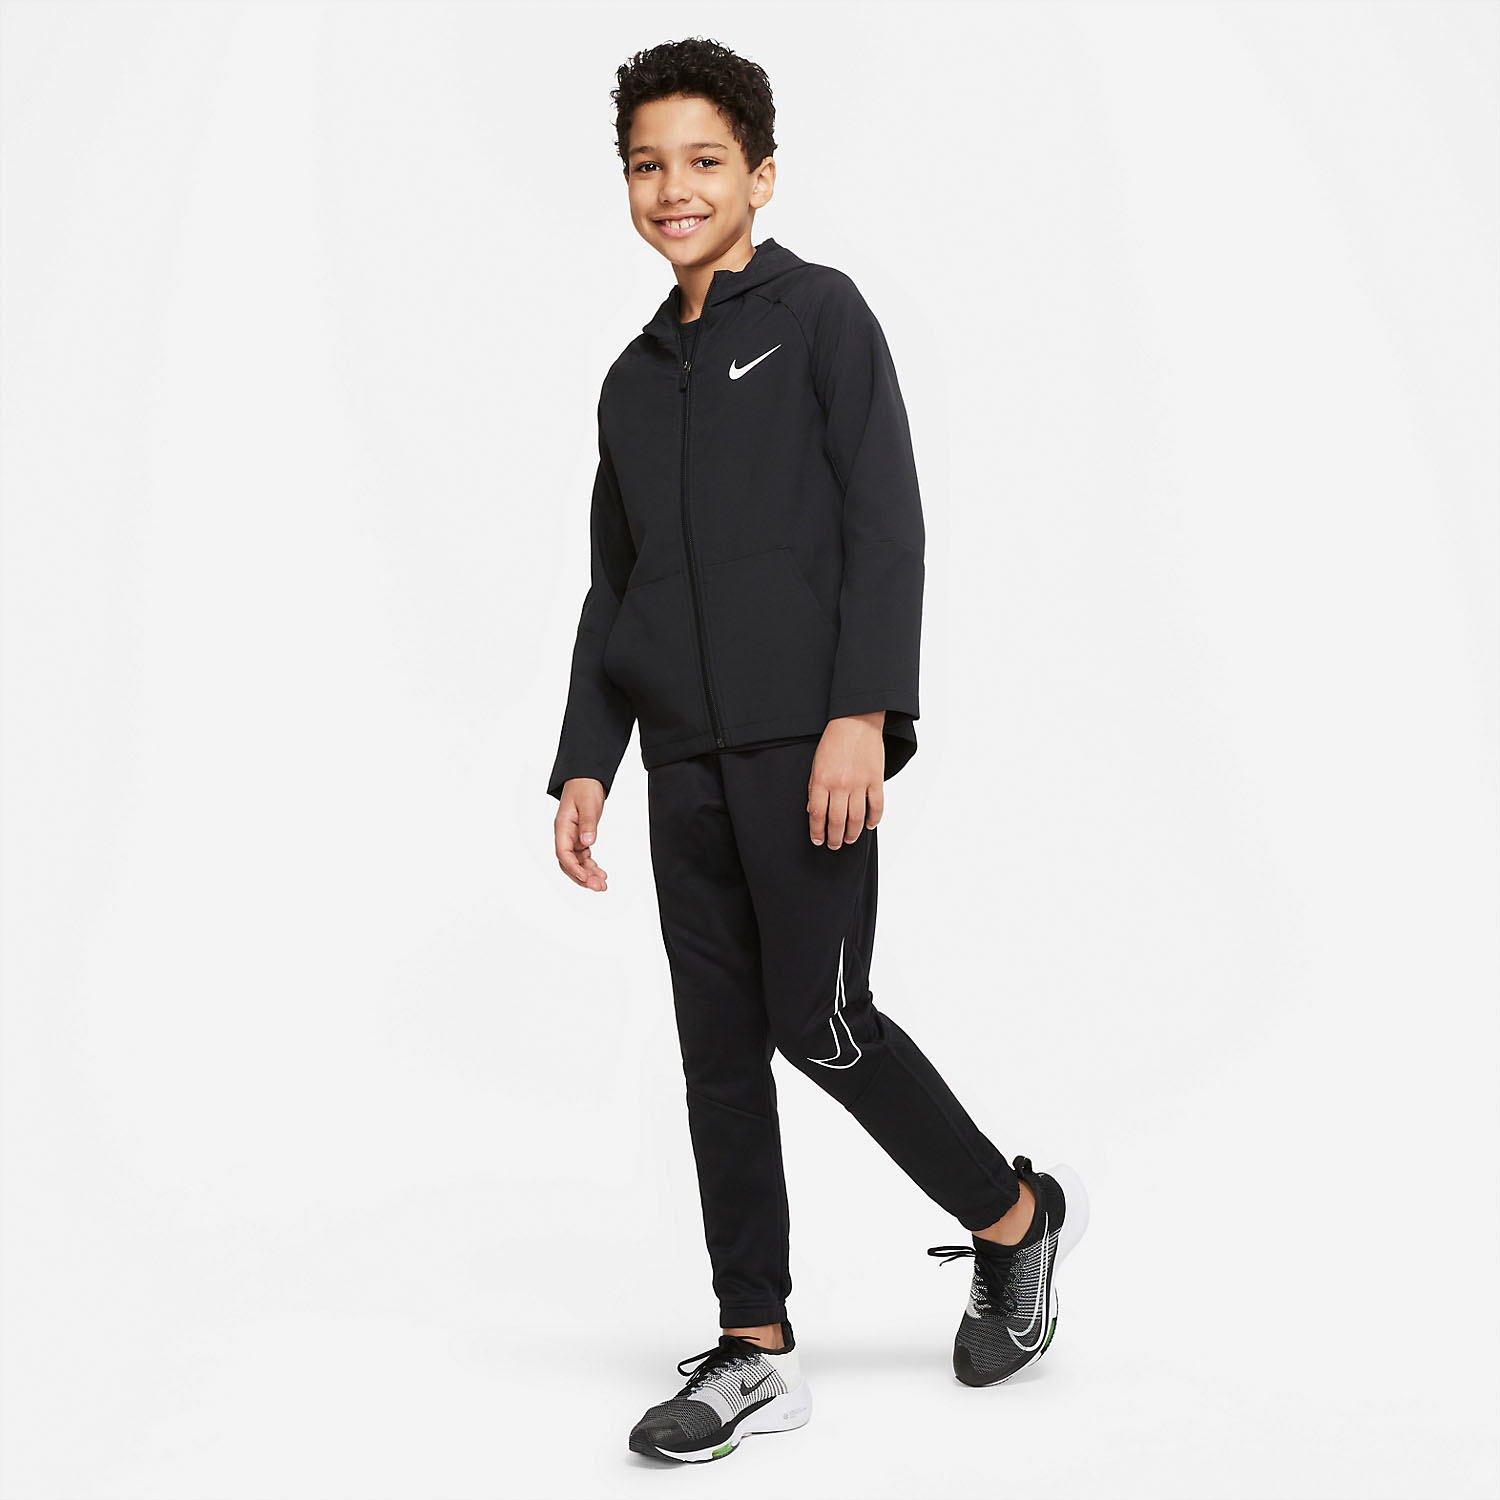 Nike Dri-FIT Woven Jacket Boy - Black/White